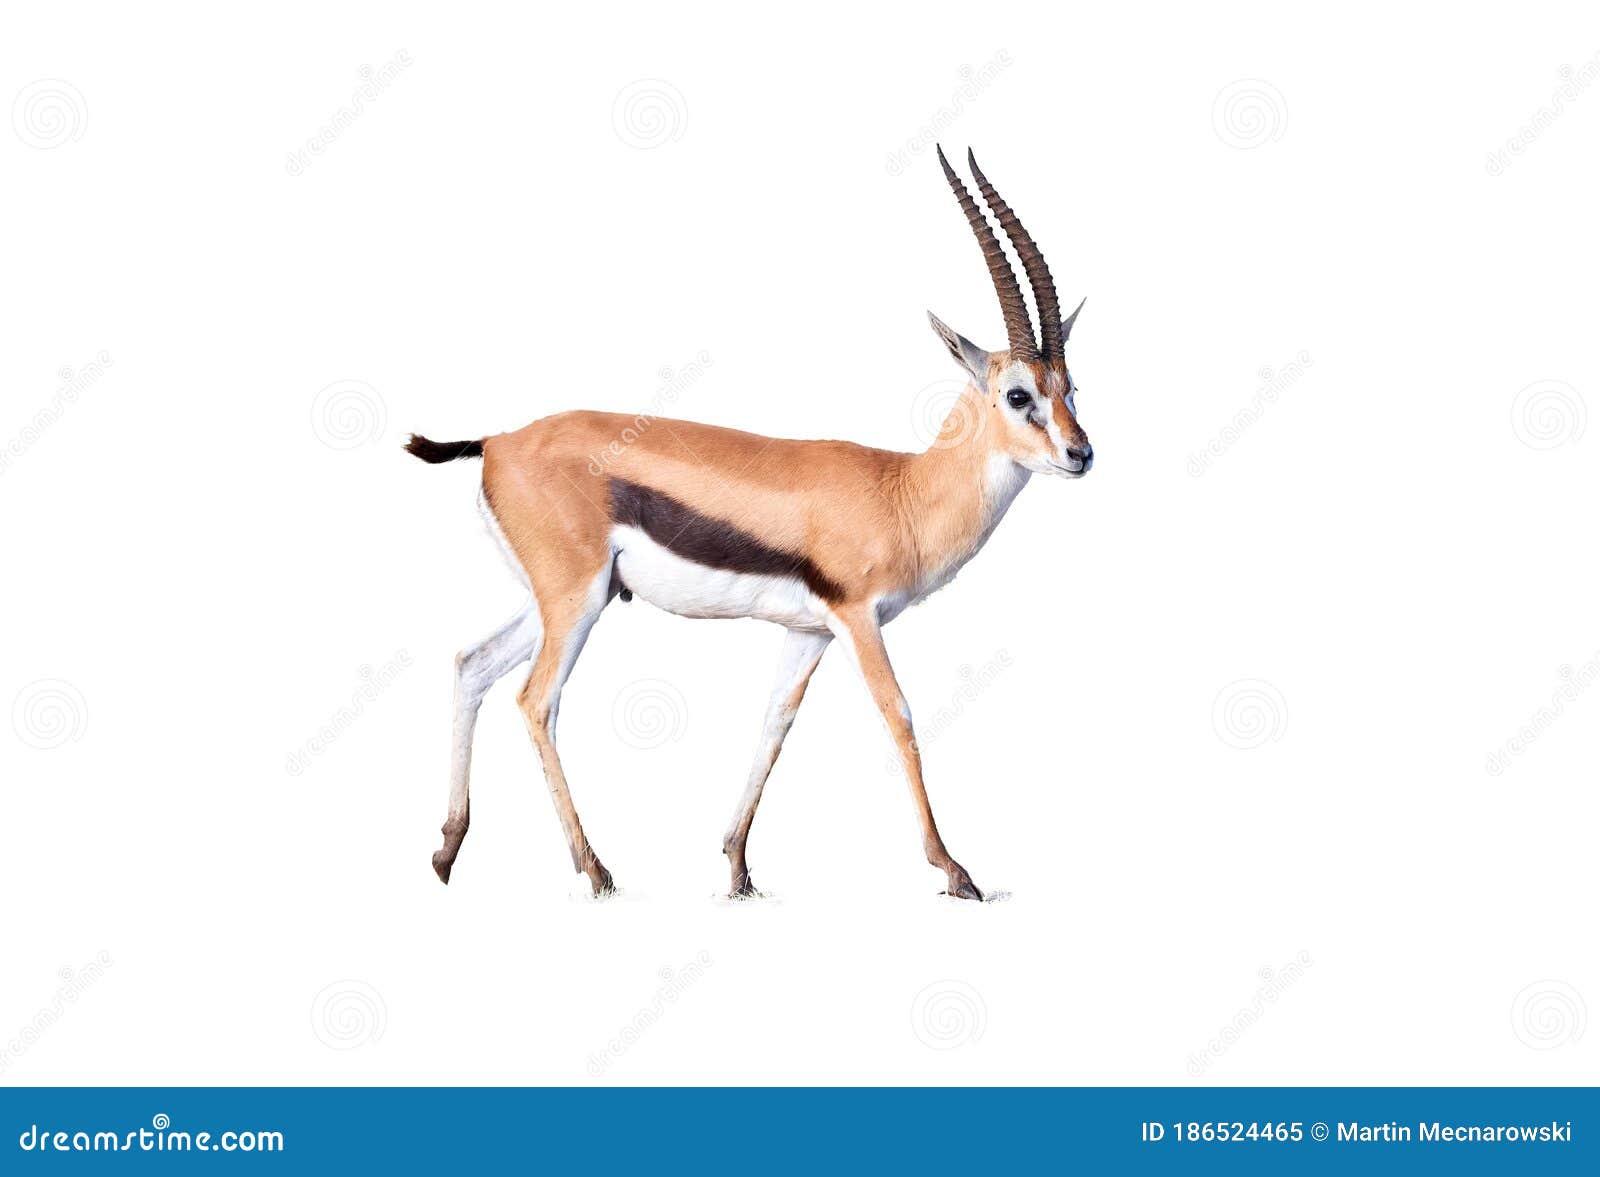 thomson`s gazelle, eudorcas thomsonii  on white background.